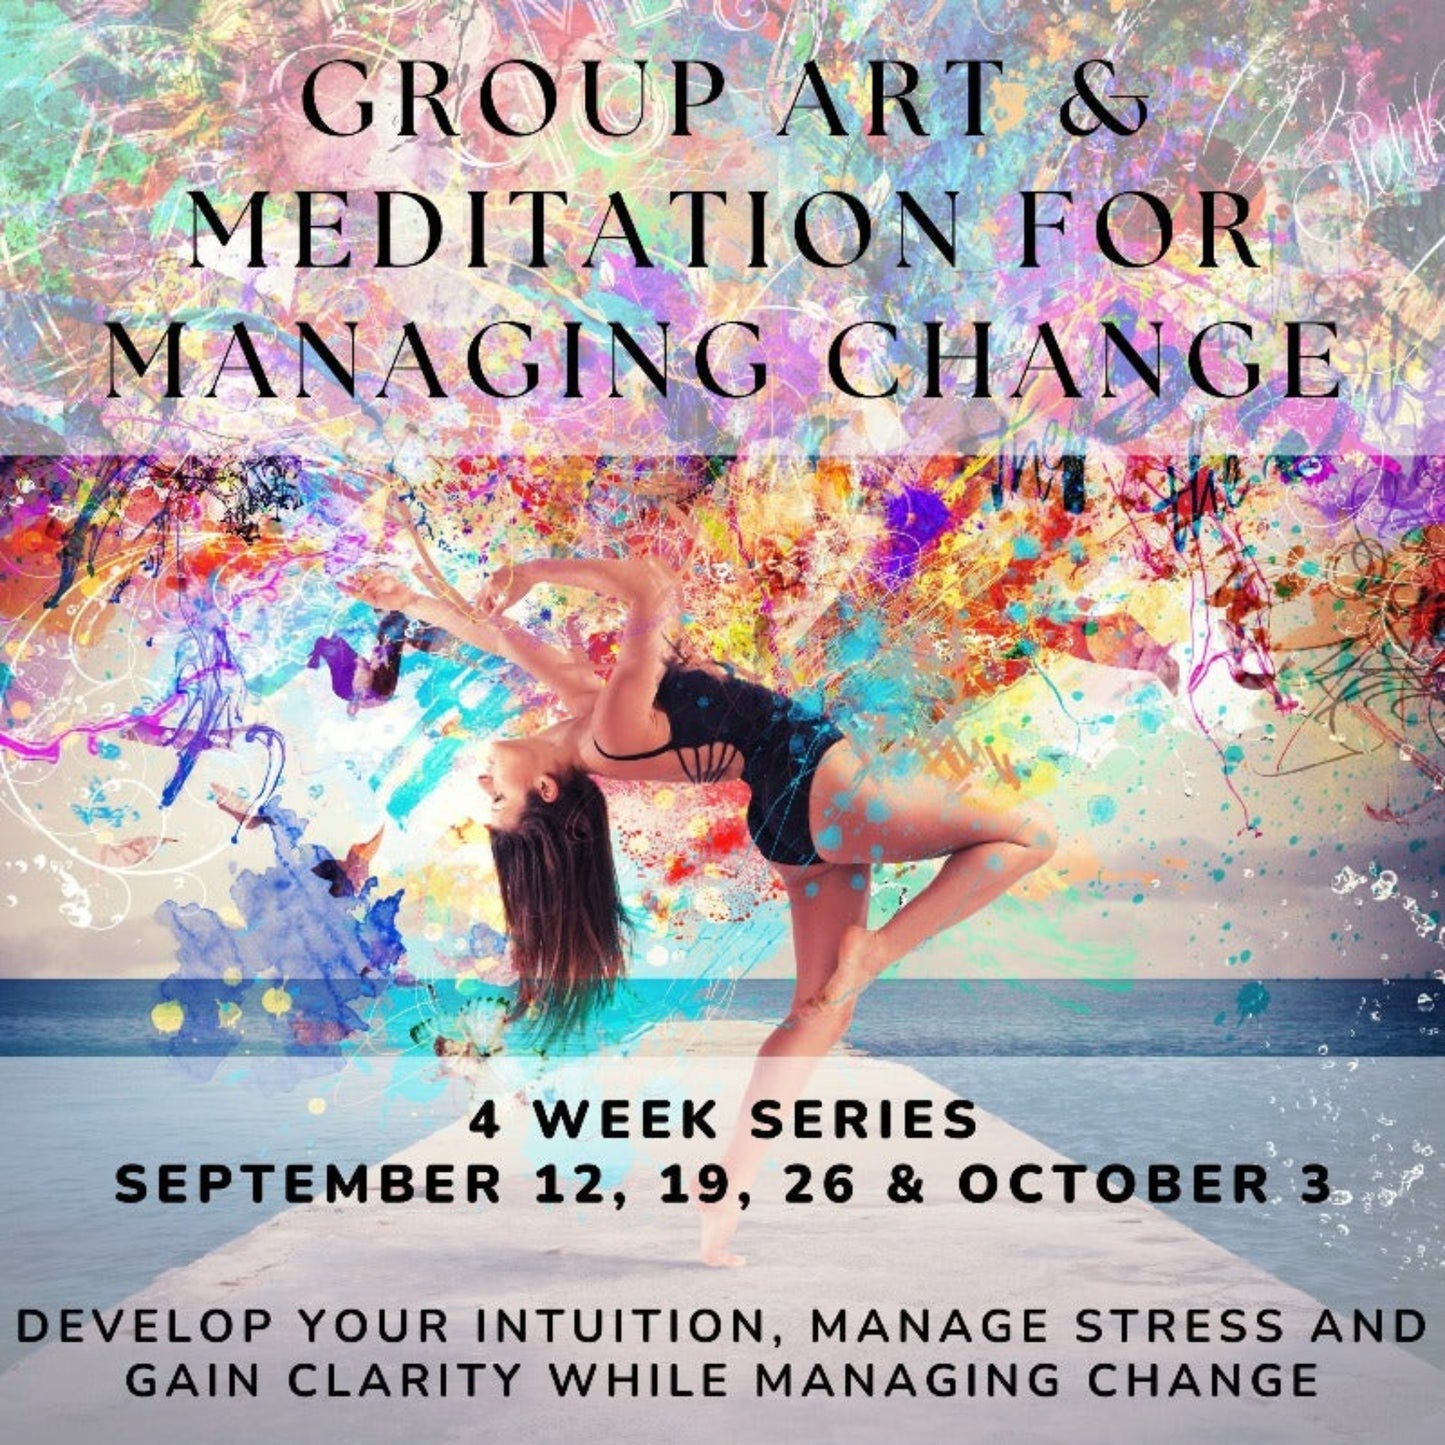 Group Art & Meditation for Managing Change: Sept.12, 19, 26 & Oct.3